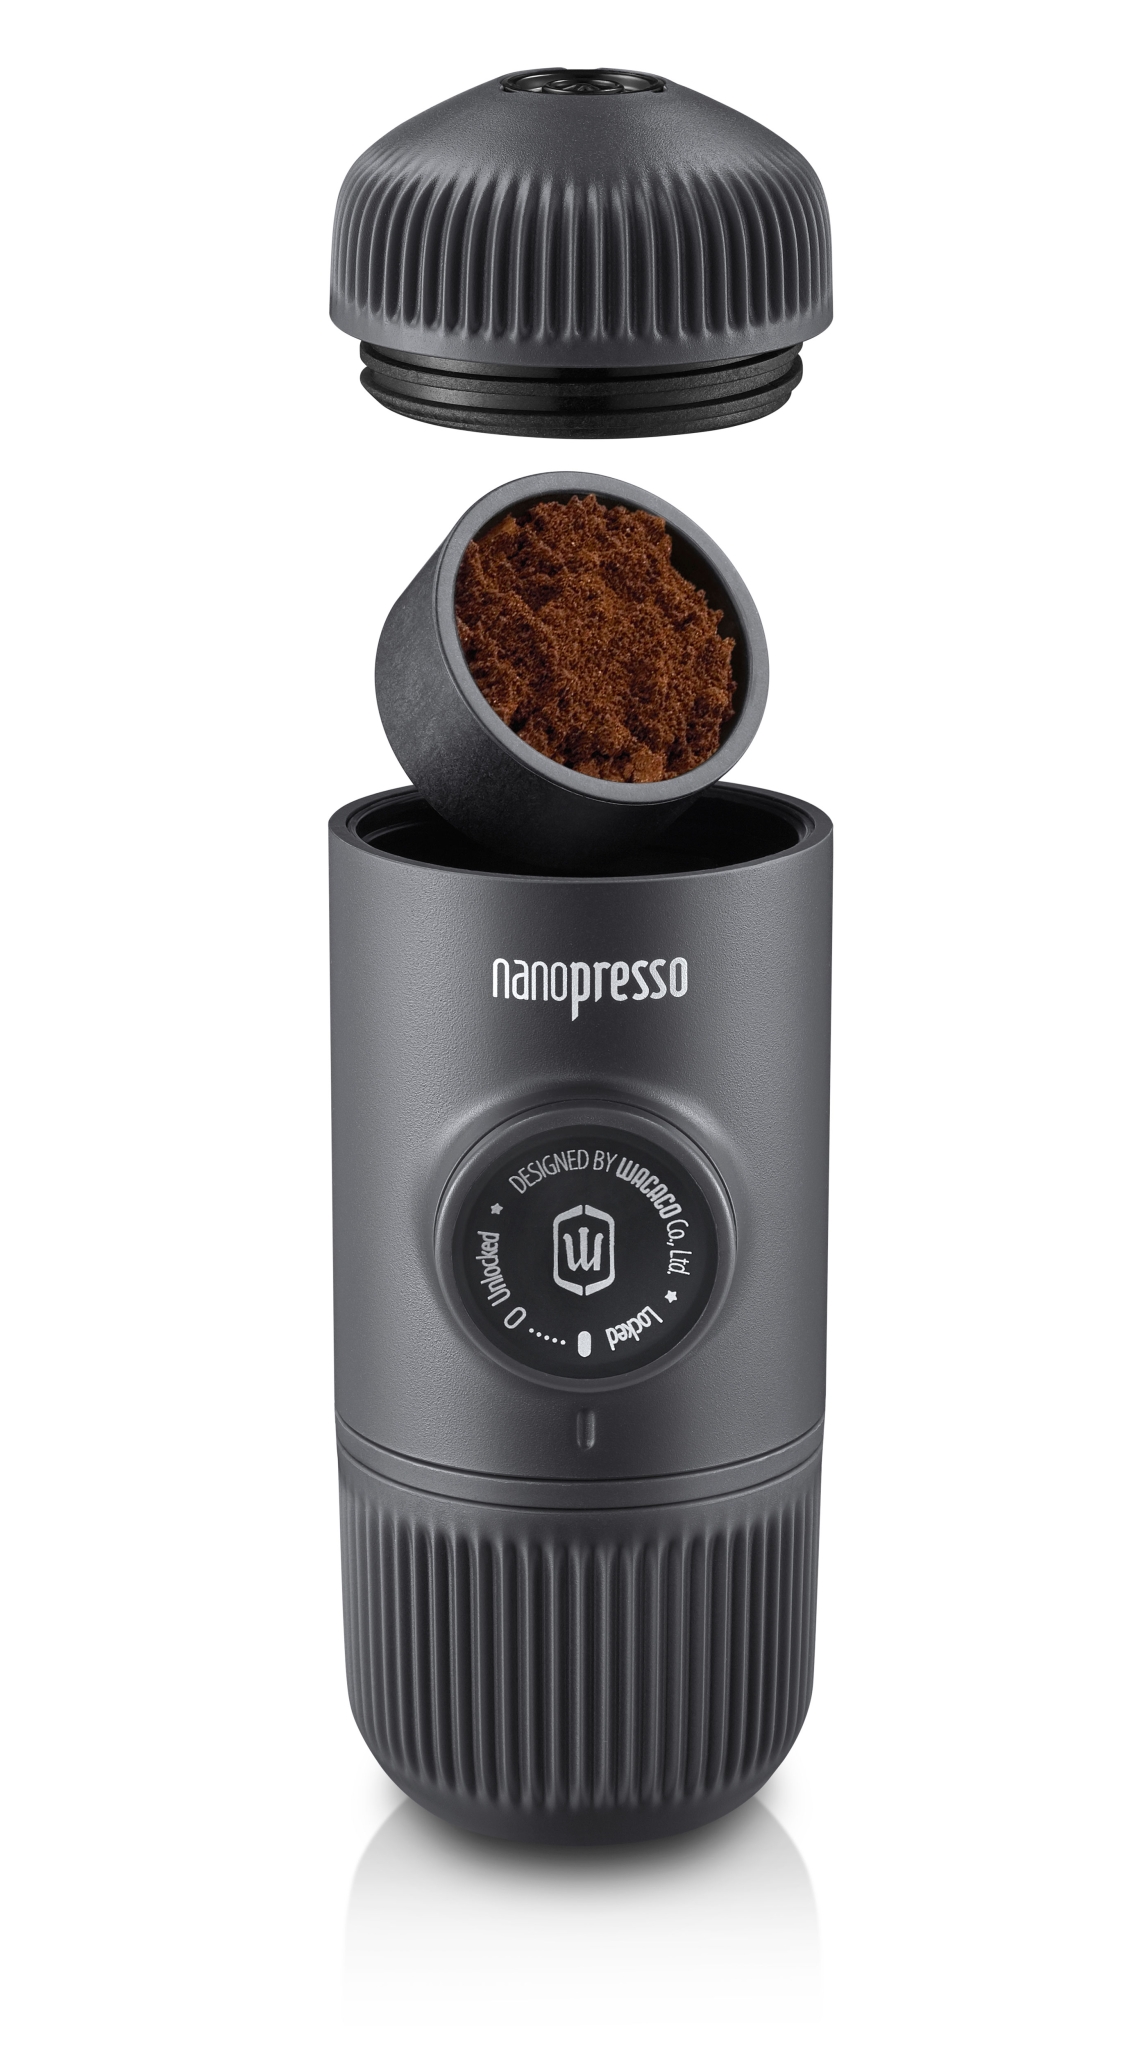 Ручная мини-кофемашина WACACO Nanopresso, оранжевый, оранжевый